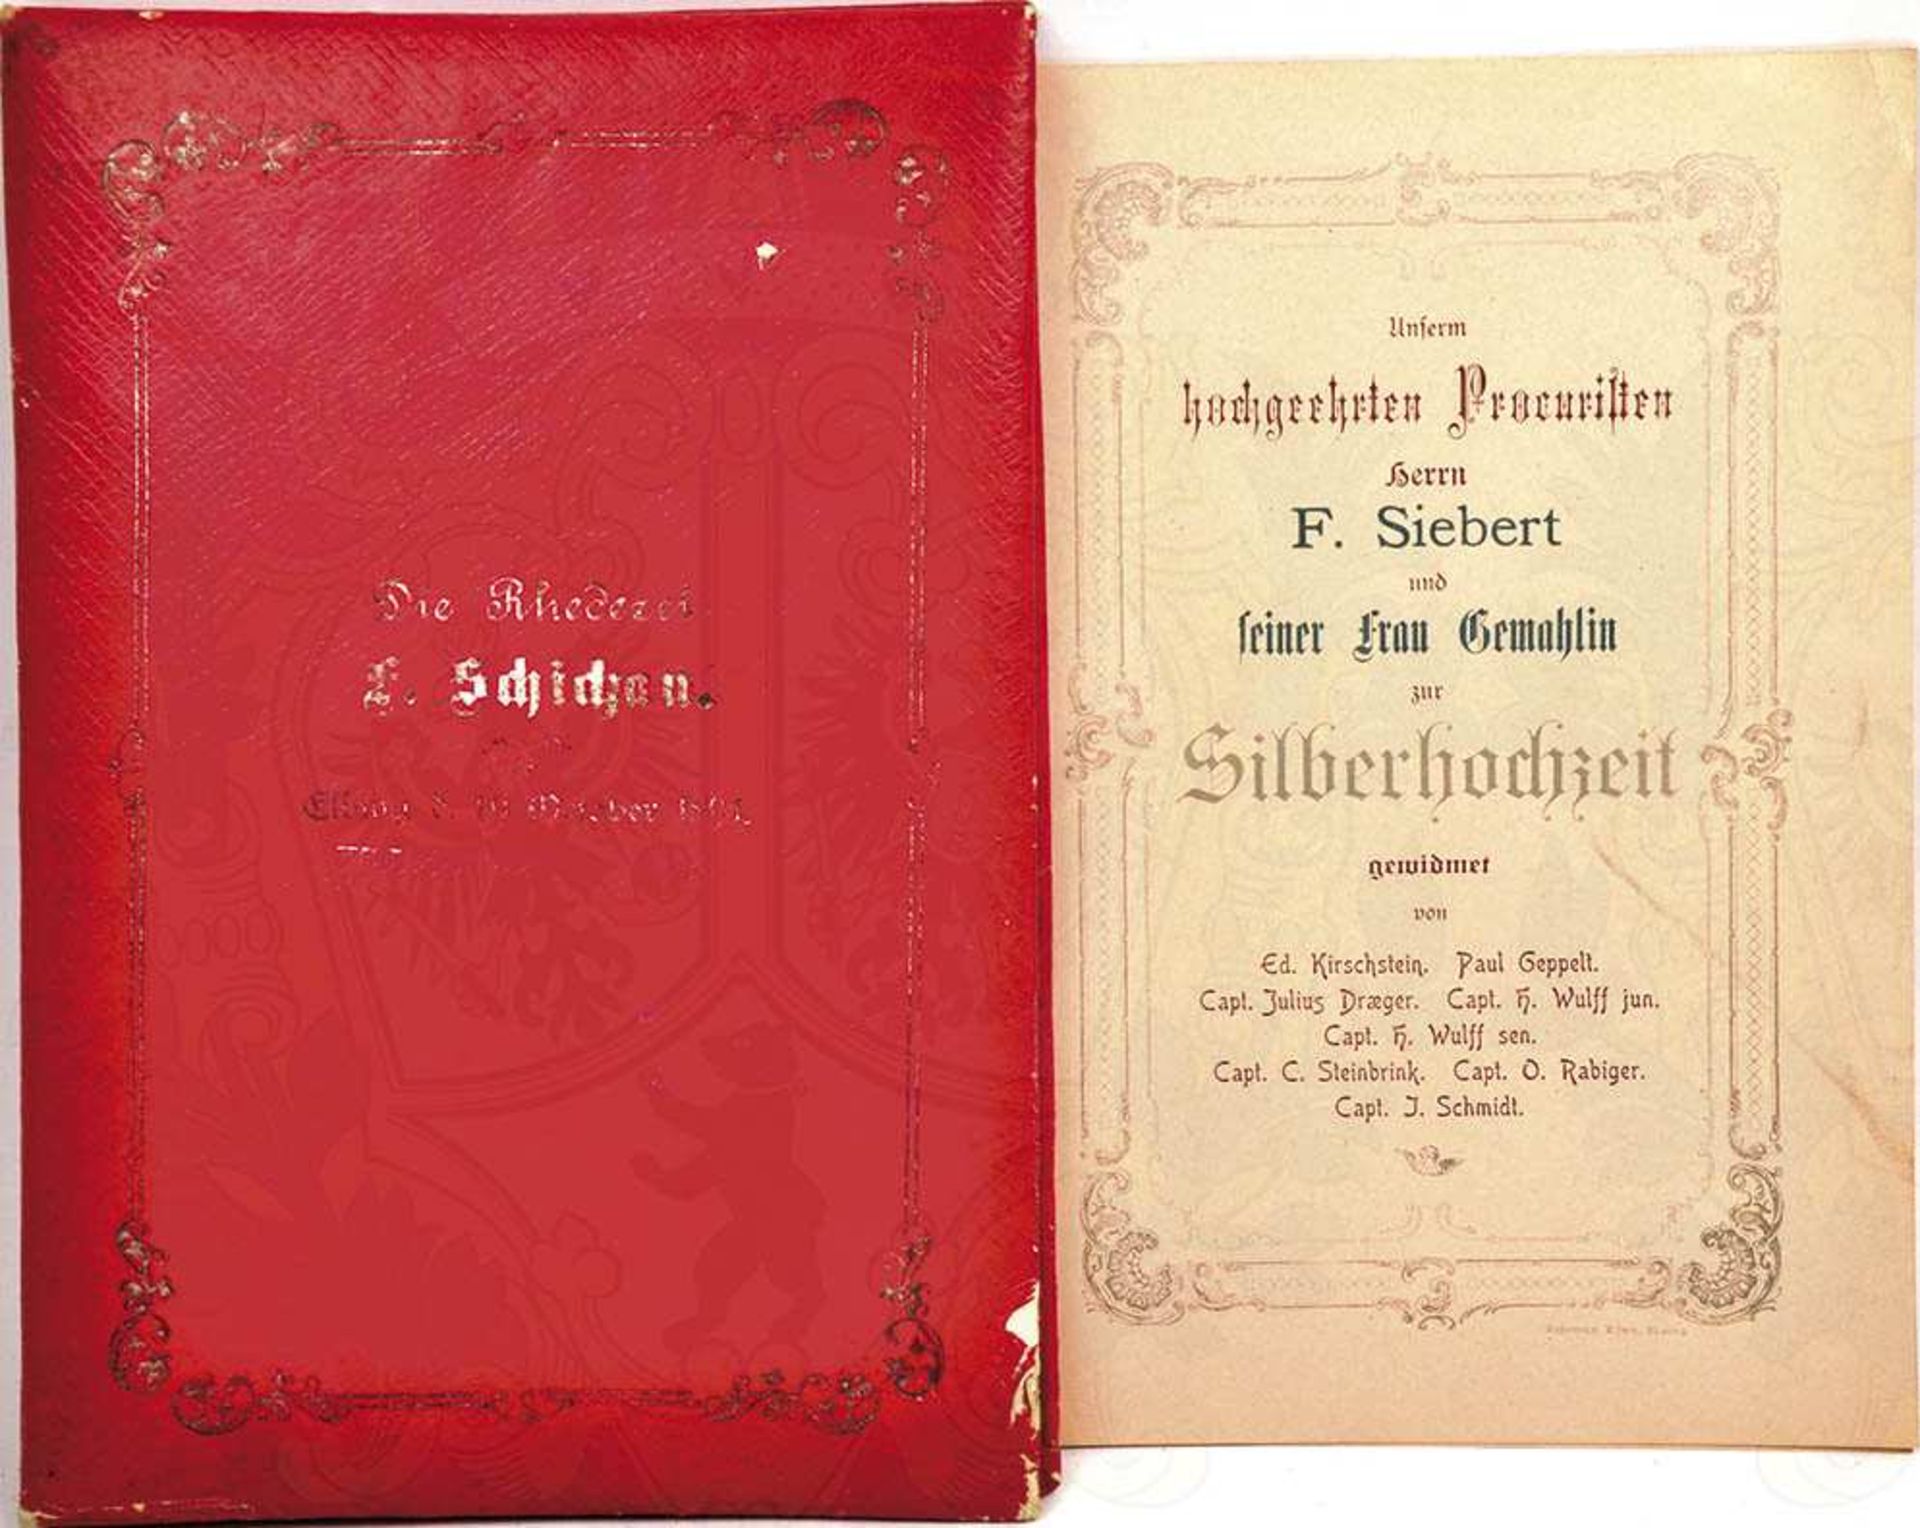 ERINNERUNGSMAPPE DER REDEREI SCHICHAU, Elbing, 19. Okt. 1894, m. Widmungsblatt z. Silberhochzeit